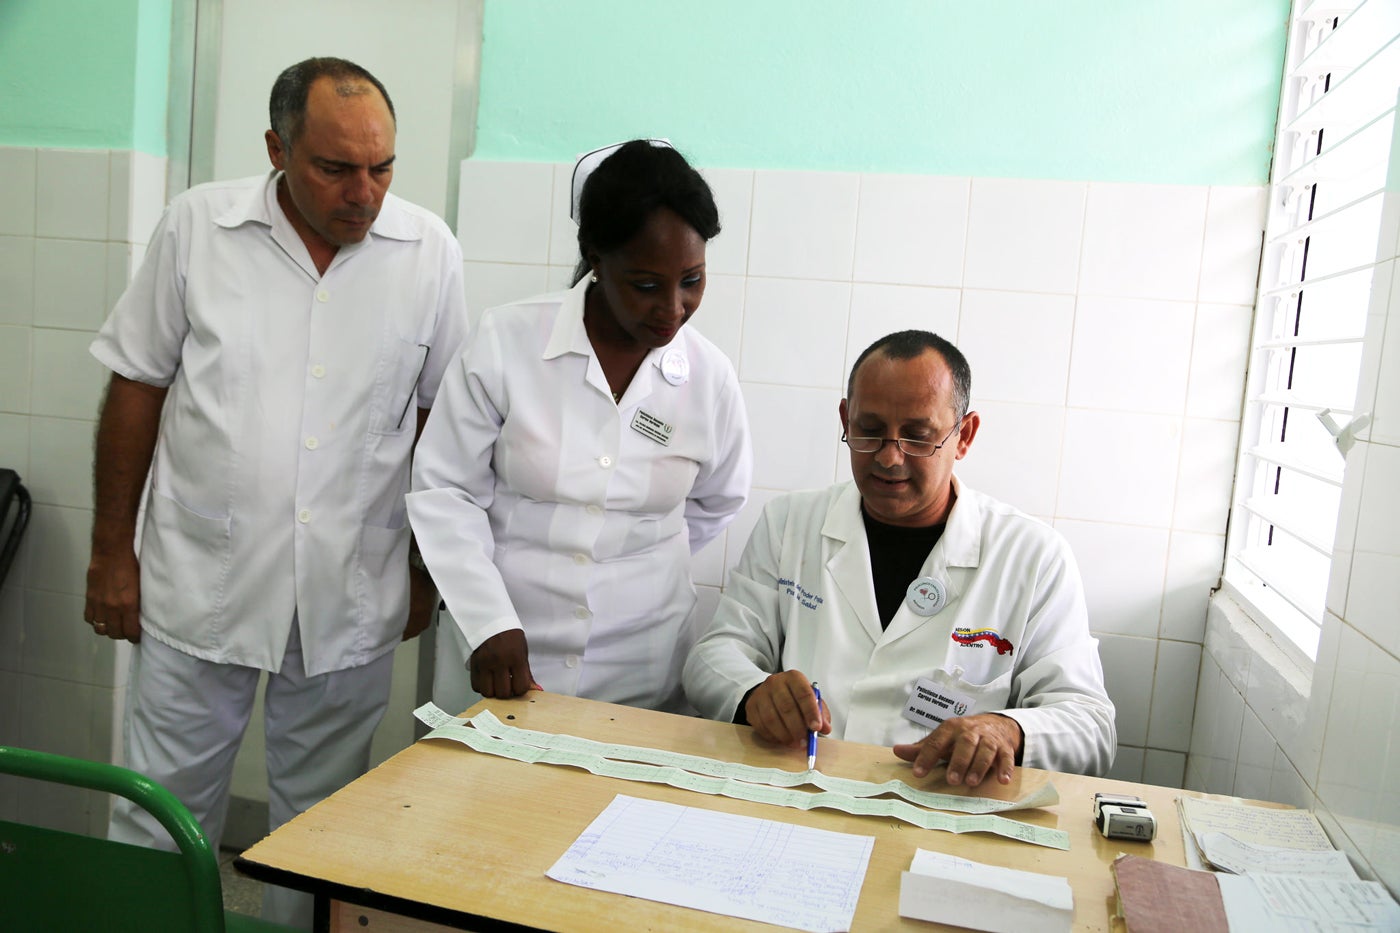 El doctor Iván Hernández Cruz comenta con el equipo de salud de la urgencia del Policlínico Verdugo, el electrocardiograma que le realizaron a una paciente que llegó con una crisis hipertensiva